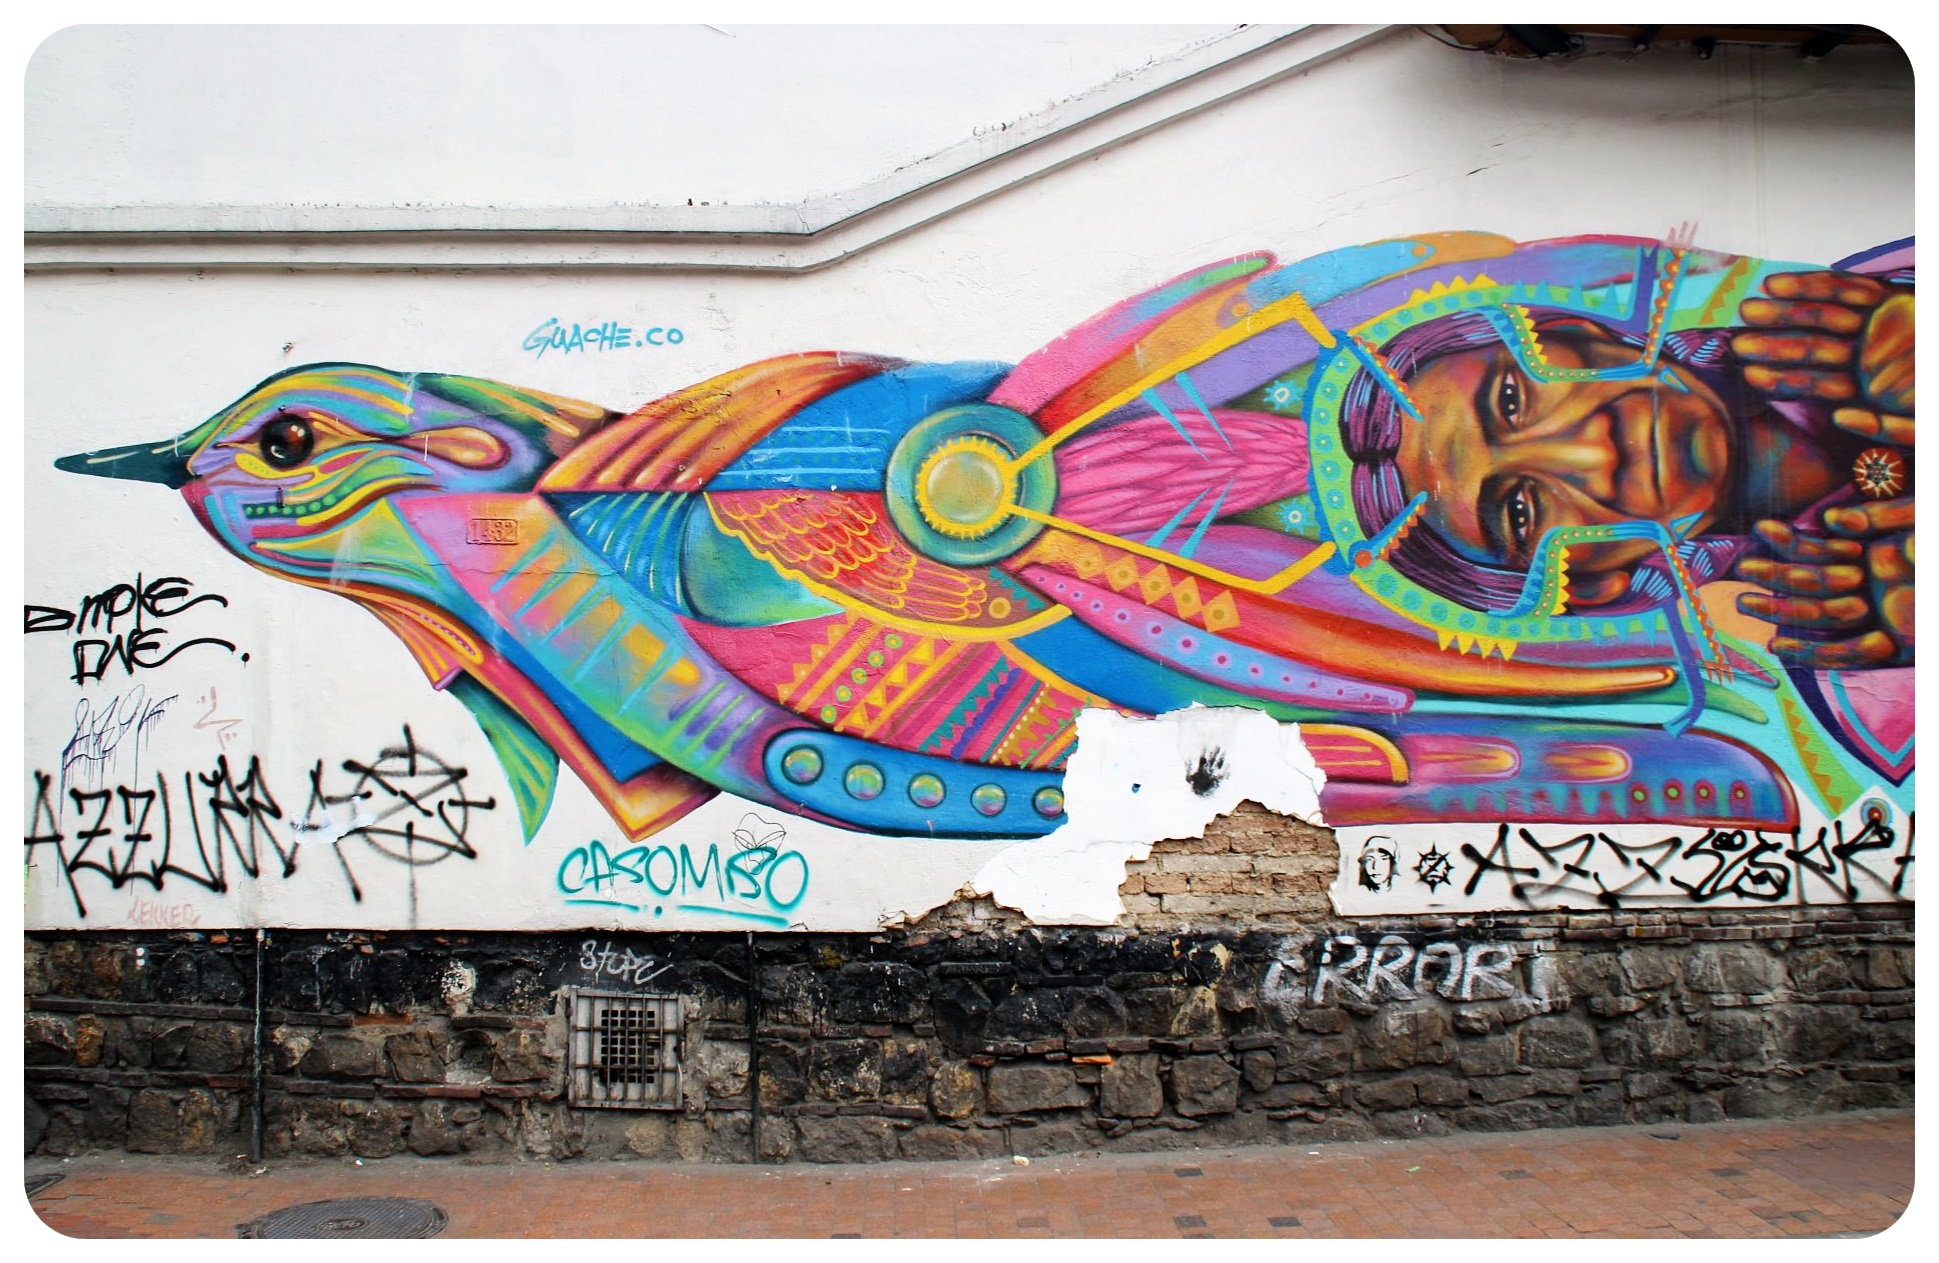 bogota street art